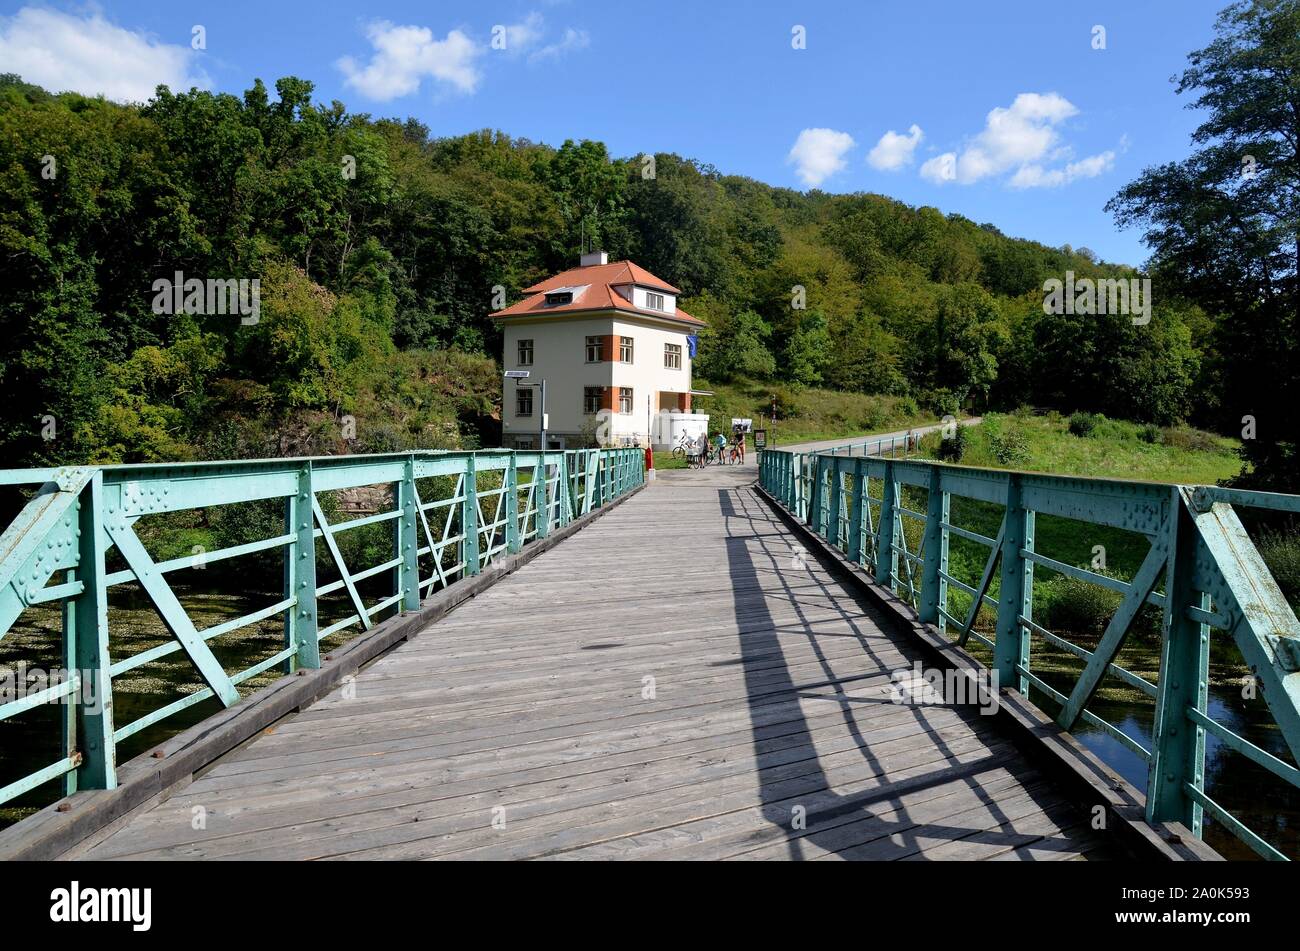 Hardegg Grenzstadt im Waldviertel, Österreich, an der Thaya gegenüber dem Cizov tschechischen,Thaya-Nationalpark, Blick über Brücke nach Tschechien Foto Stock